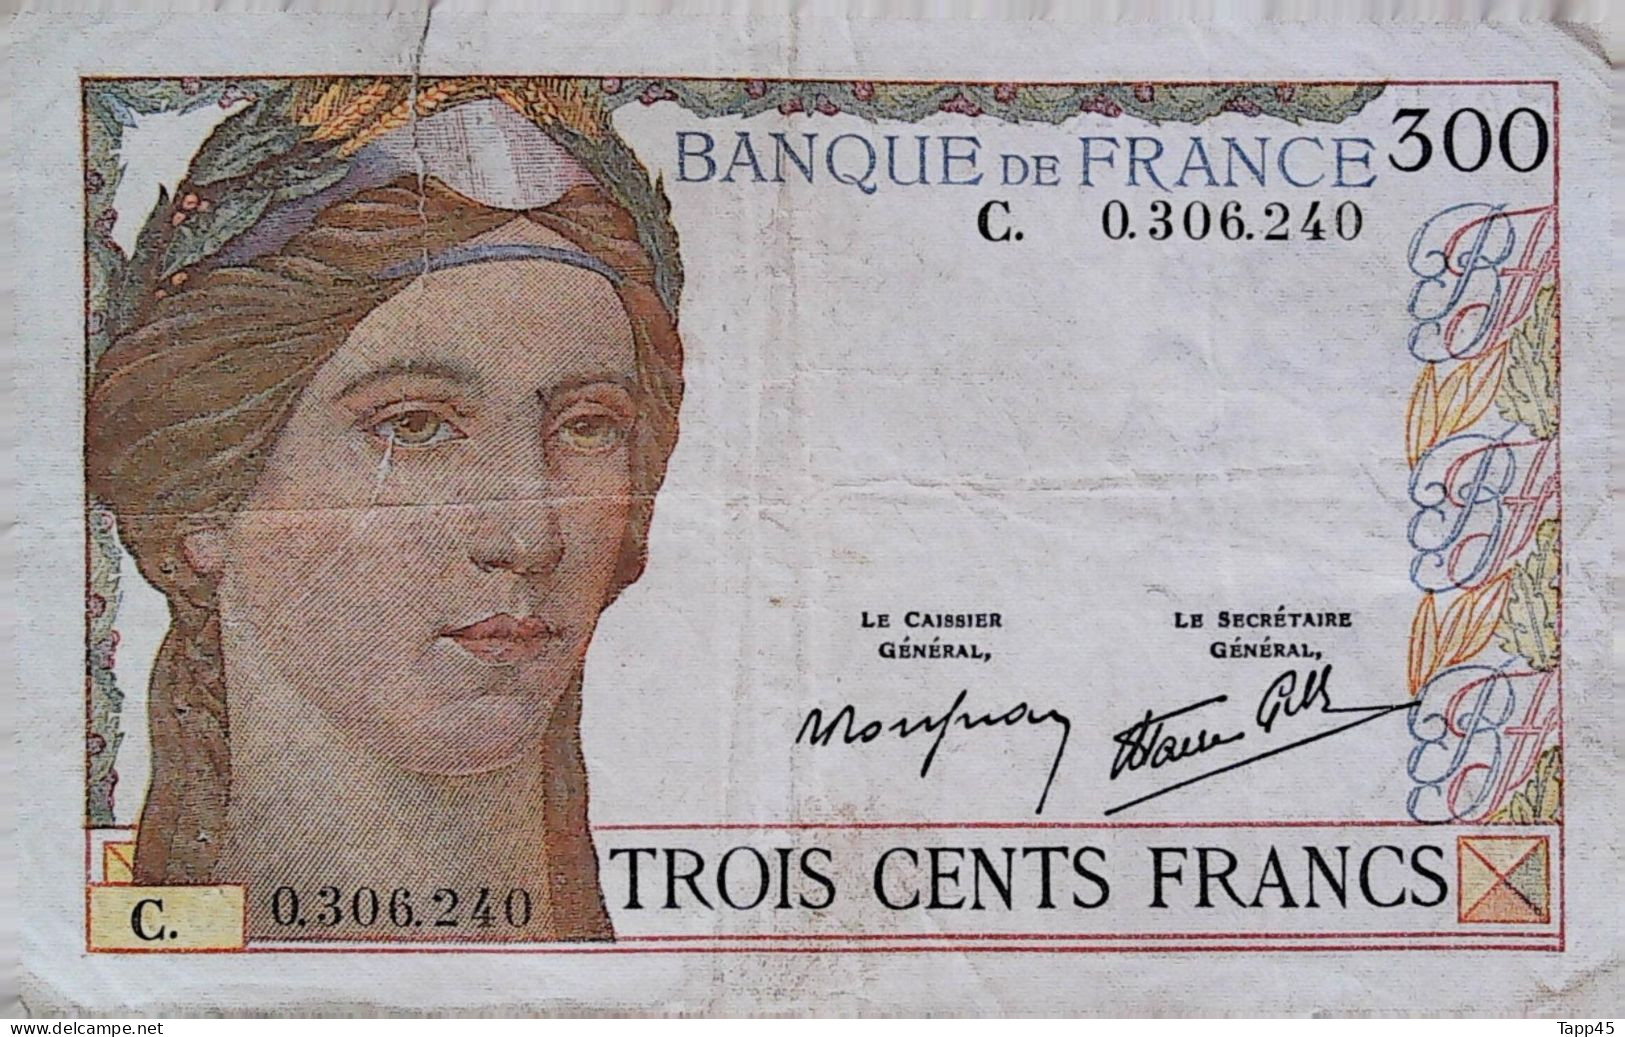 Billets > France > 300 F 1938 >Non Daté > 3 épinglages > Coupure Mais Aucun Manque >peu Commun > C03 - 300 F 1938-1939